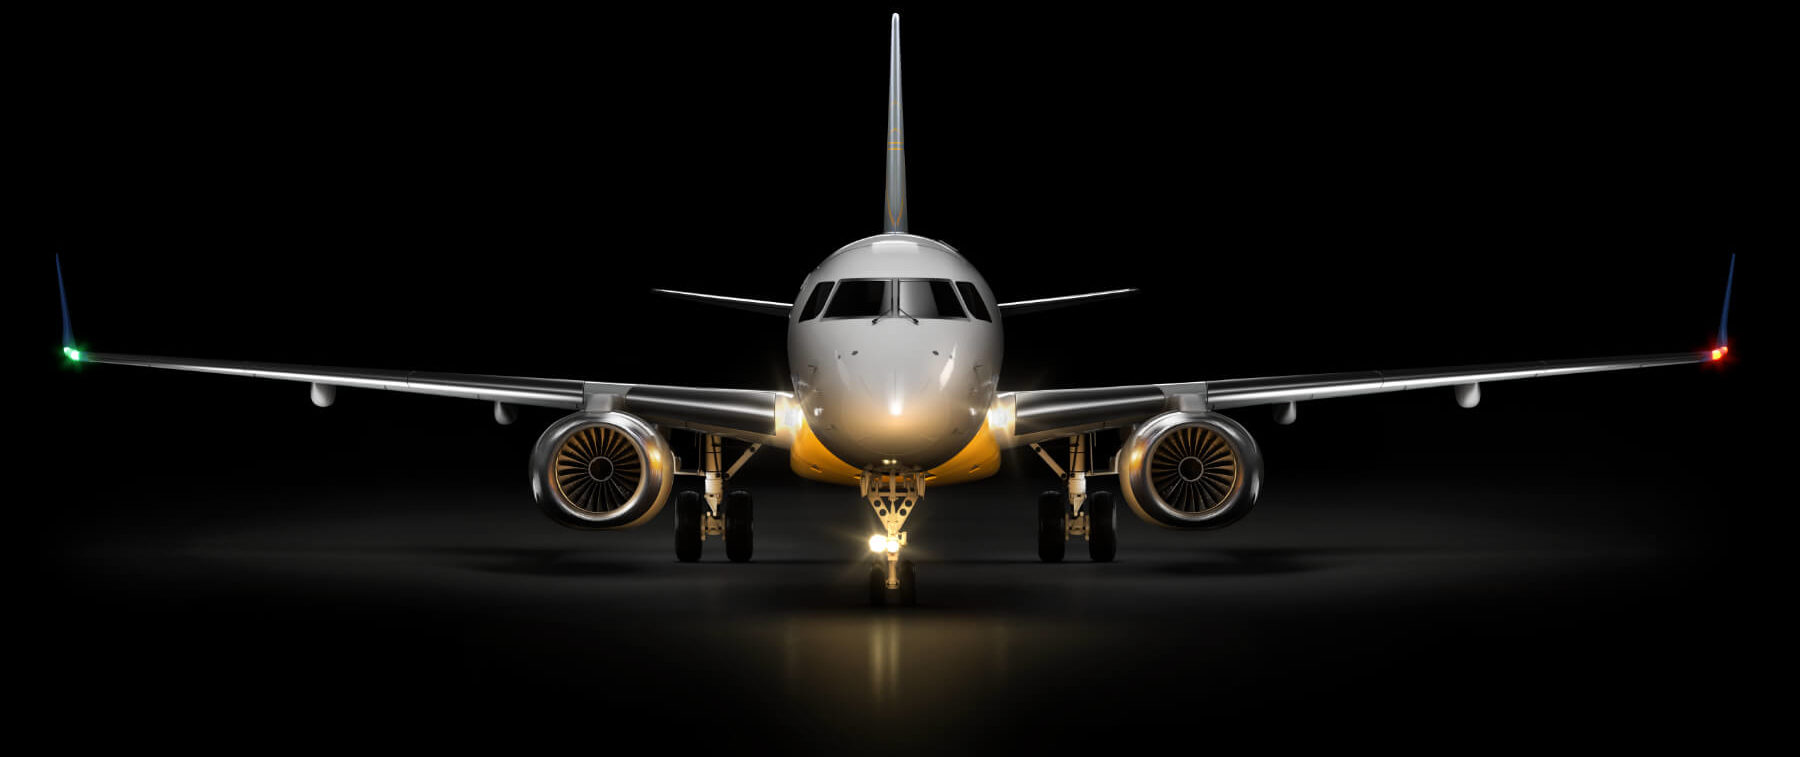 Airbus A320 : Location de jet privé - AEROAFFAIRES